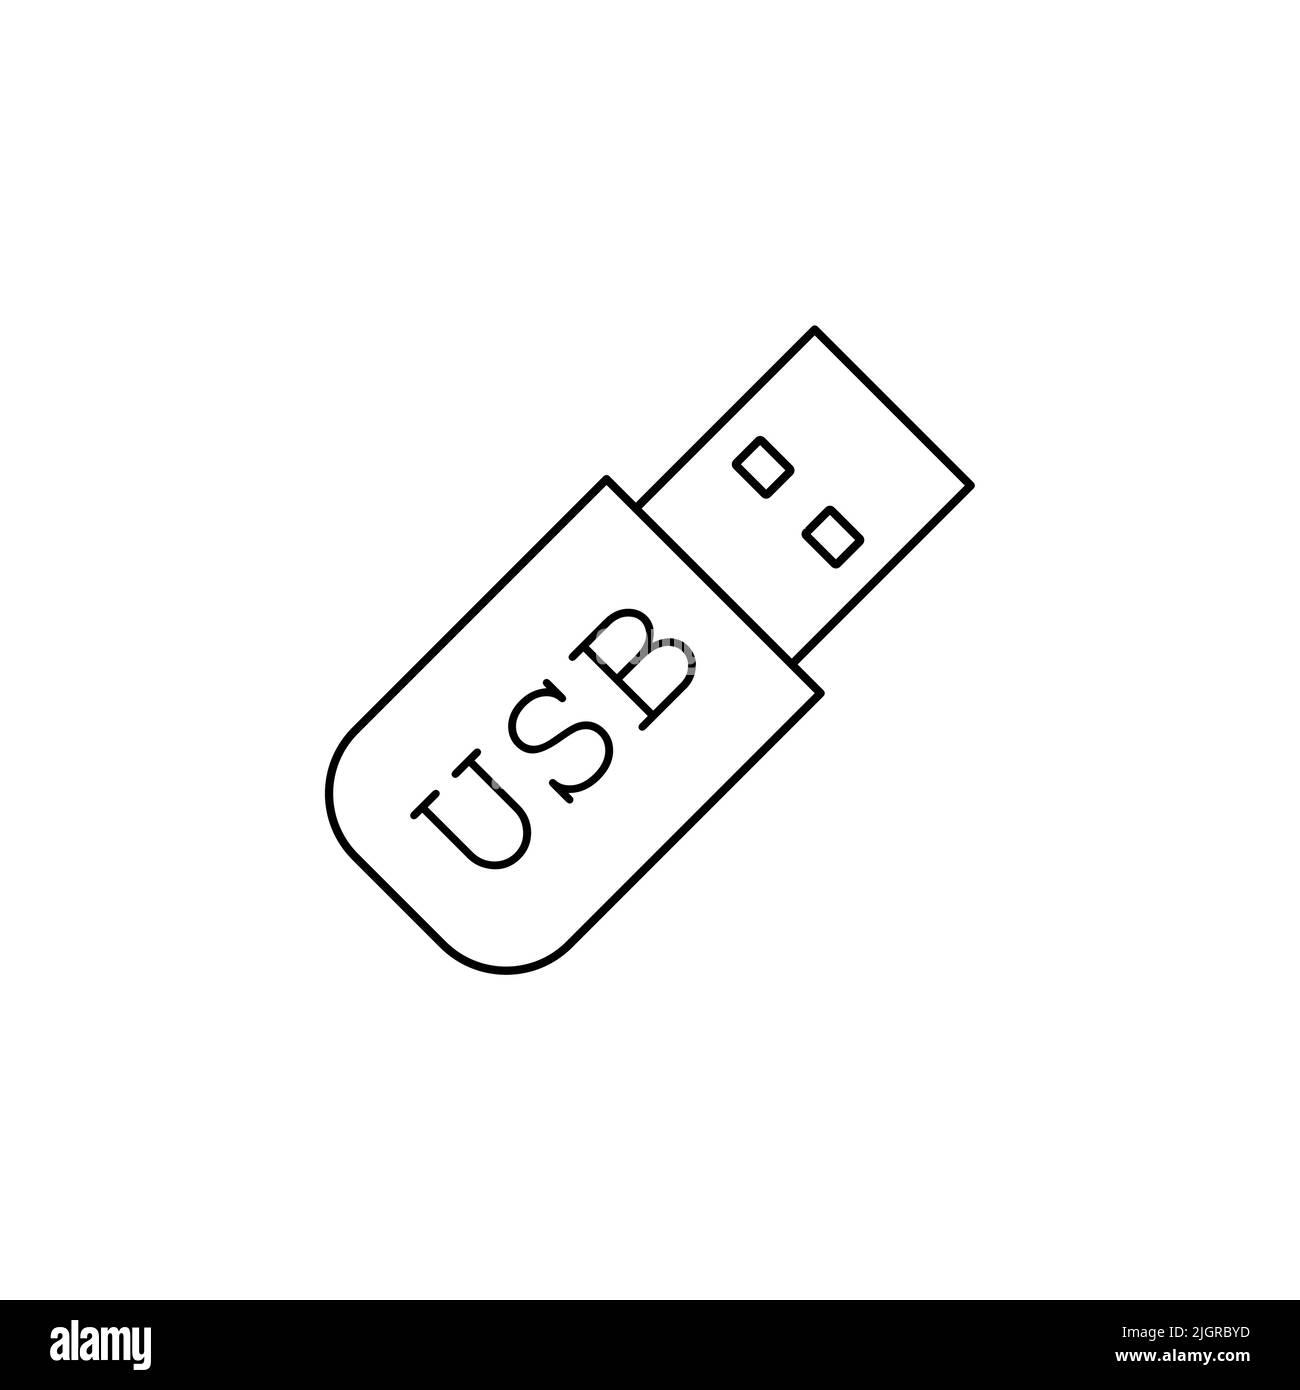 Usb flash drive line icon, memory stick icon. usb Icon. Flash memory symbol, web and computer icon Stock Vector